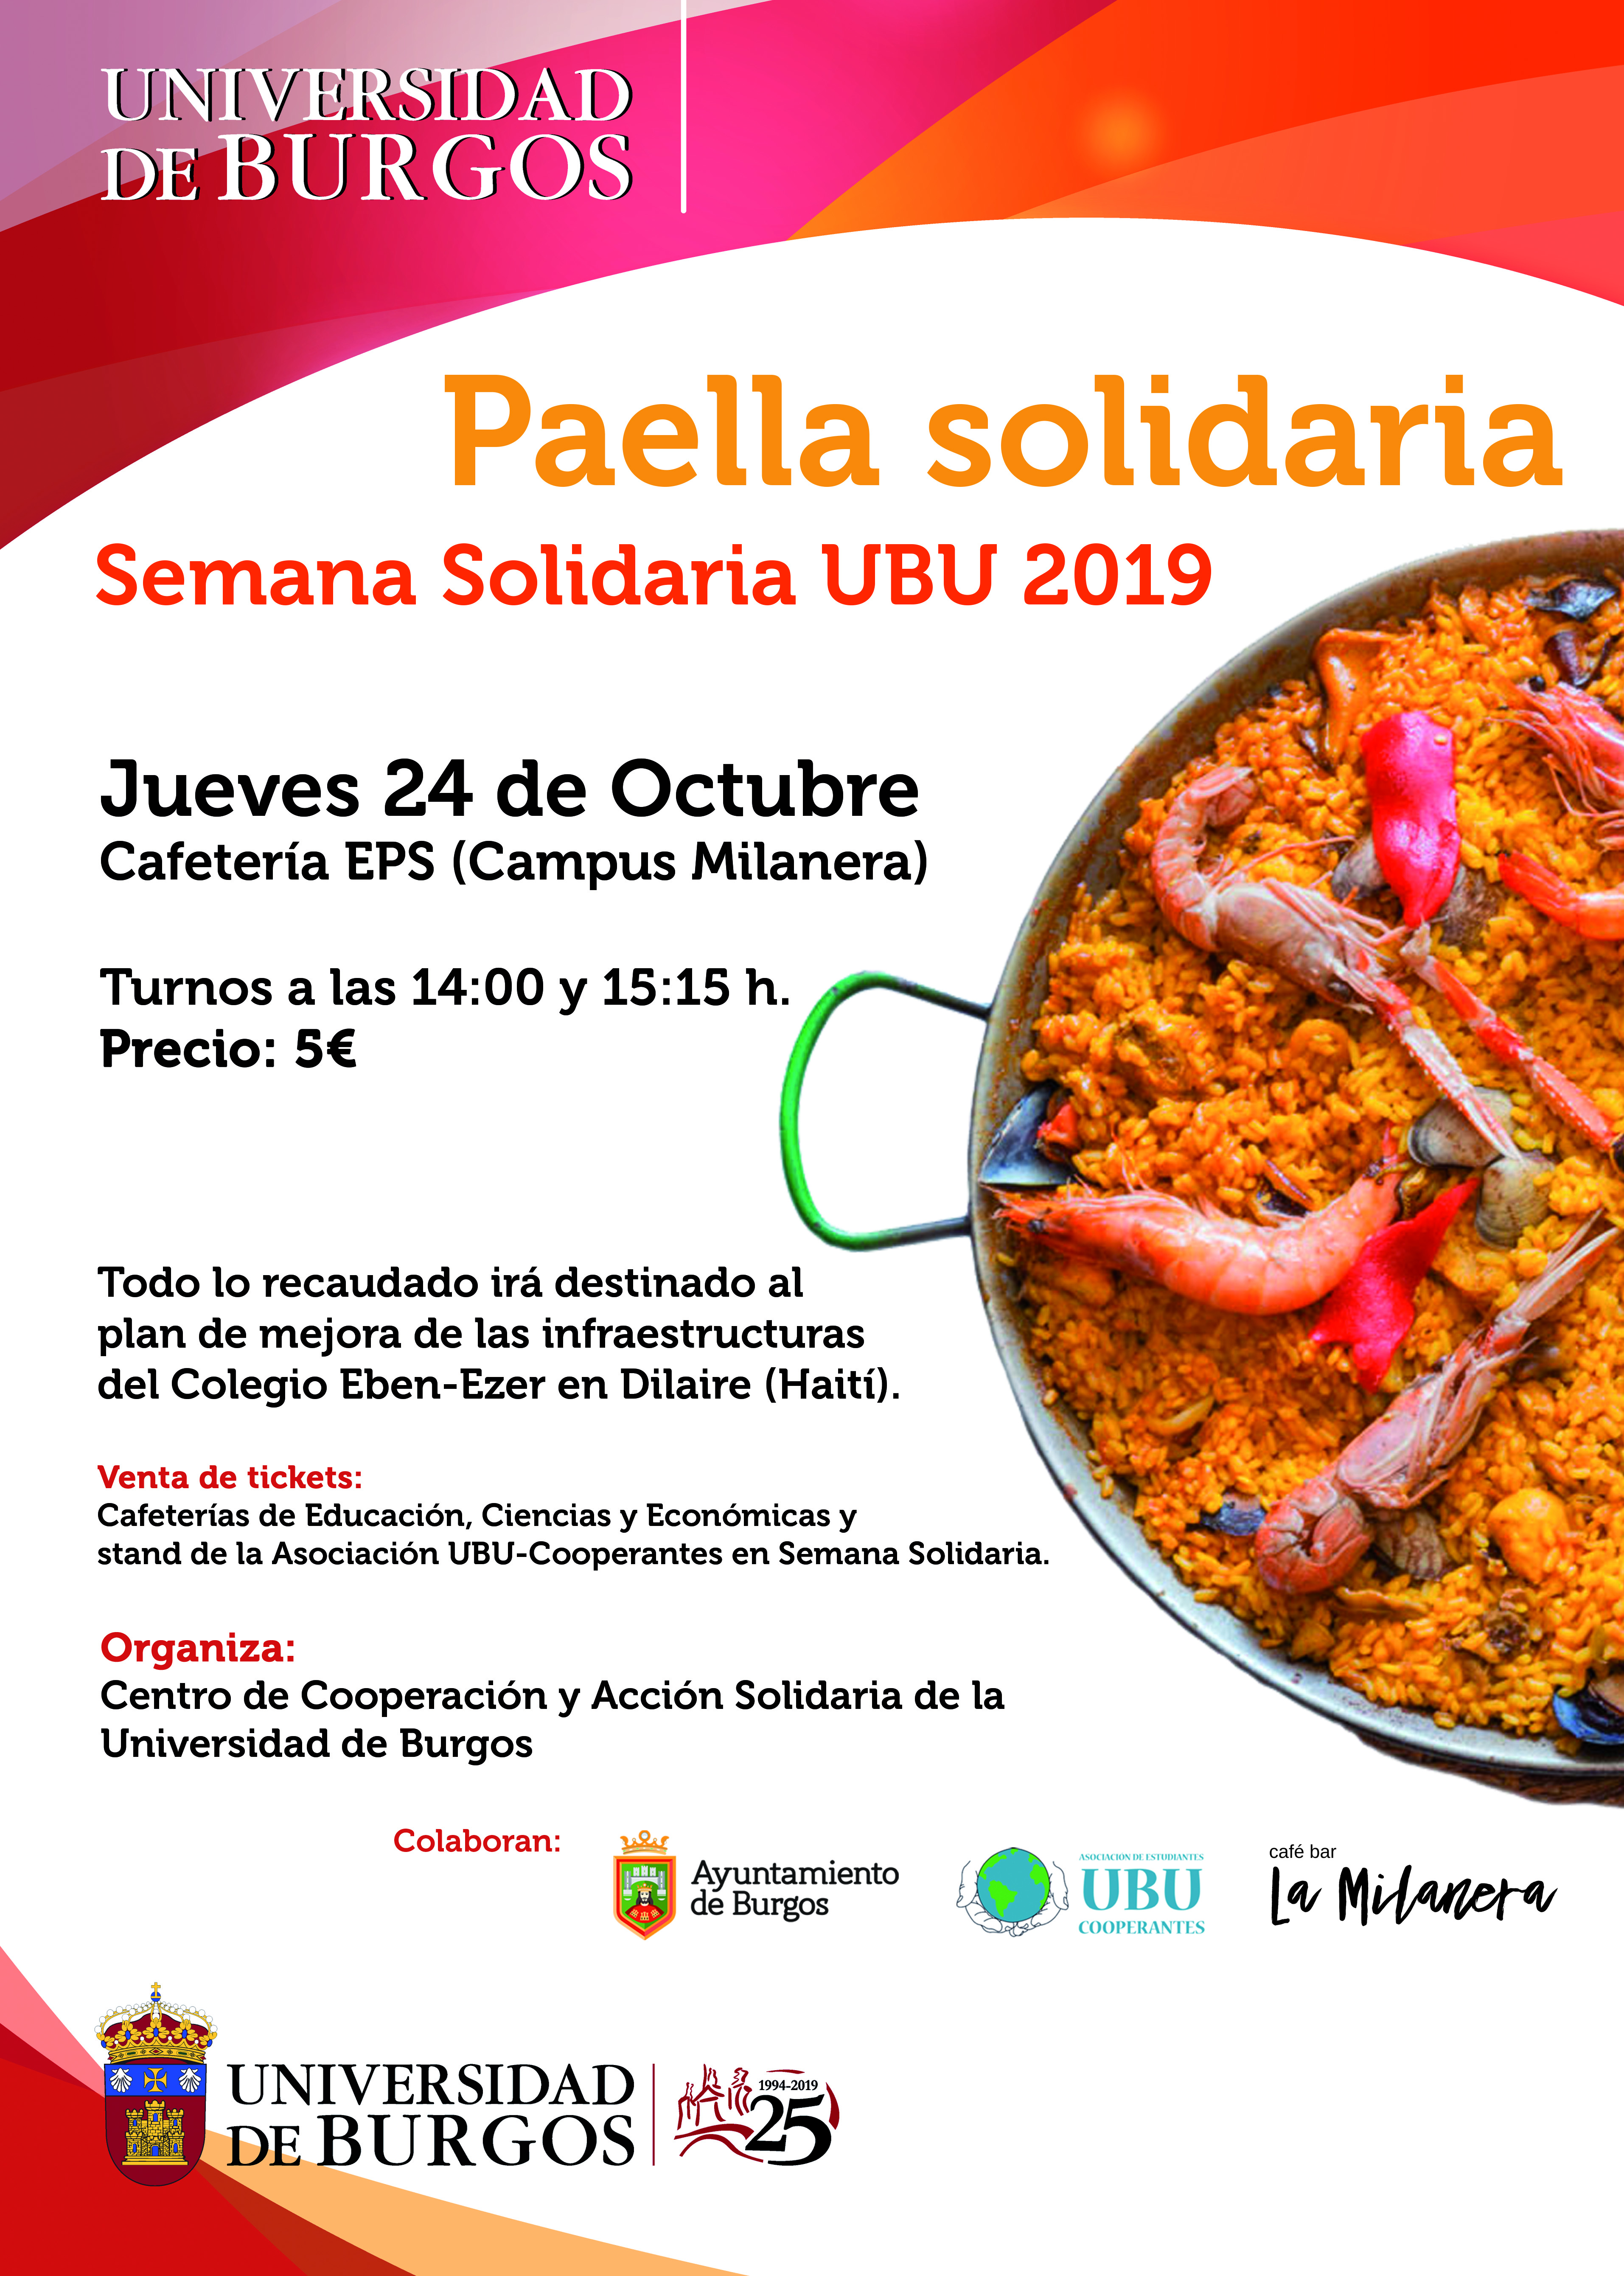 Paella Solidaria